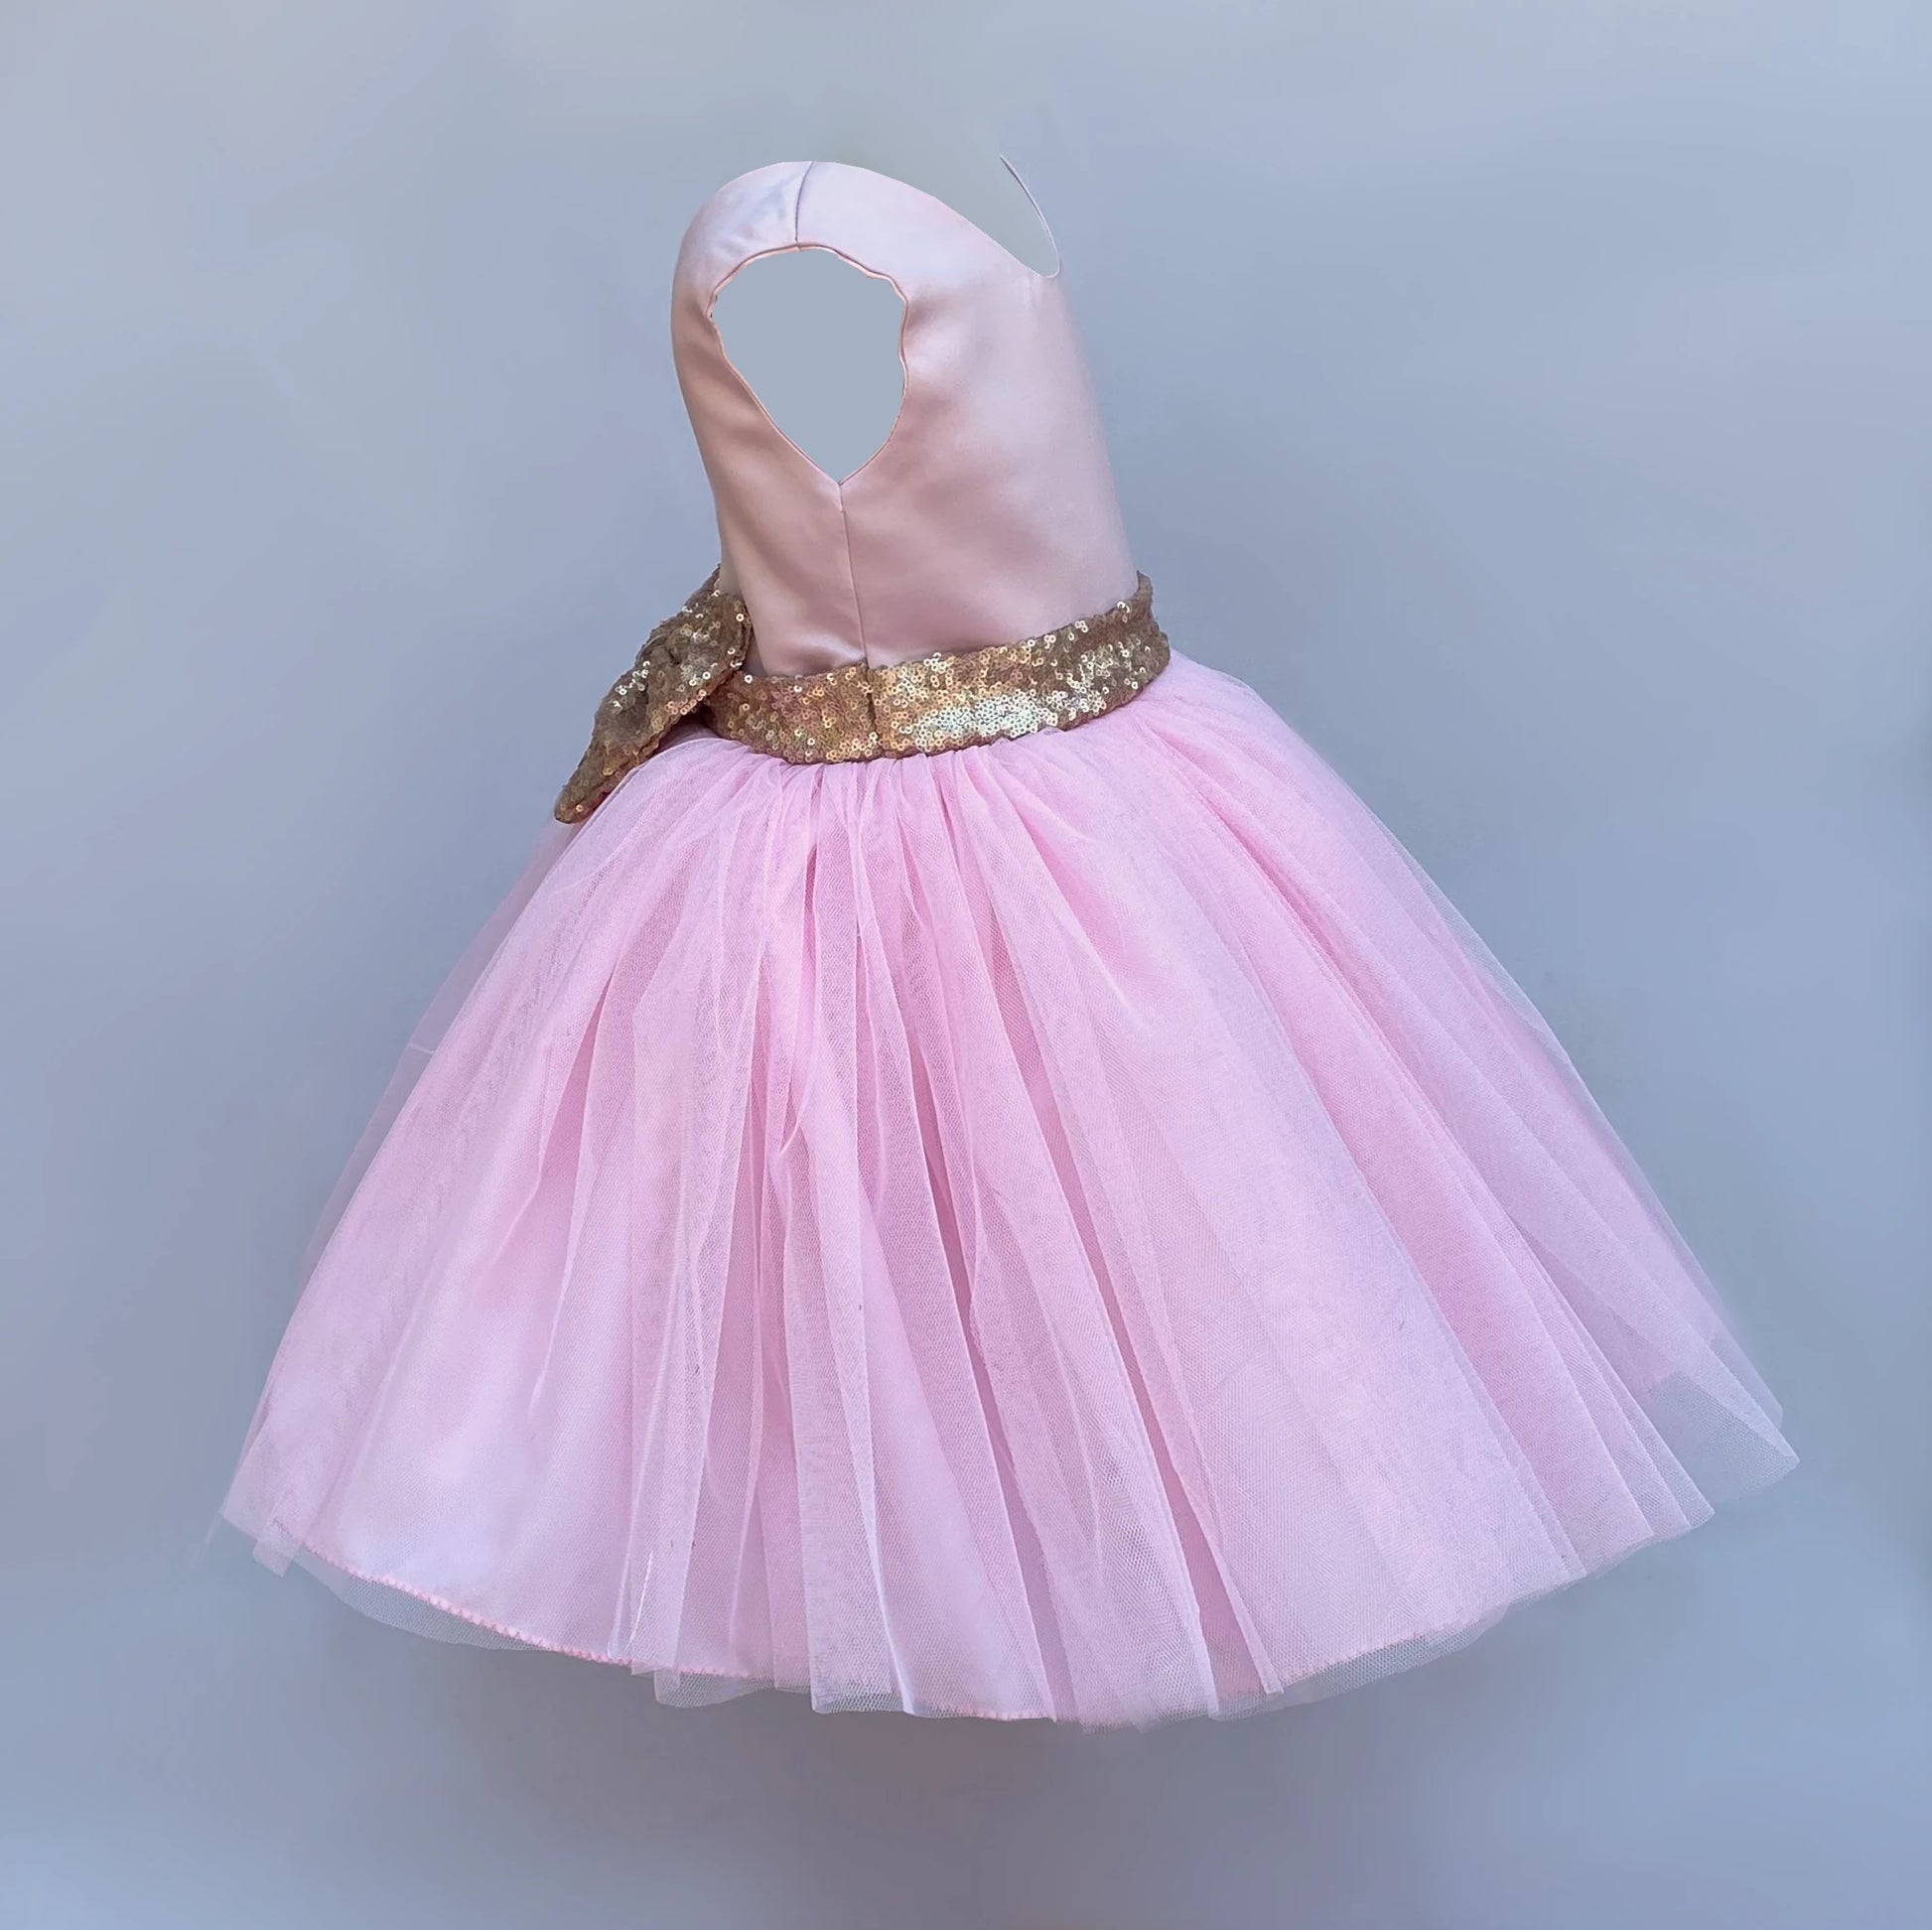 Alina soft pink and sequin tutu dress